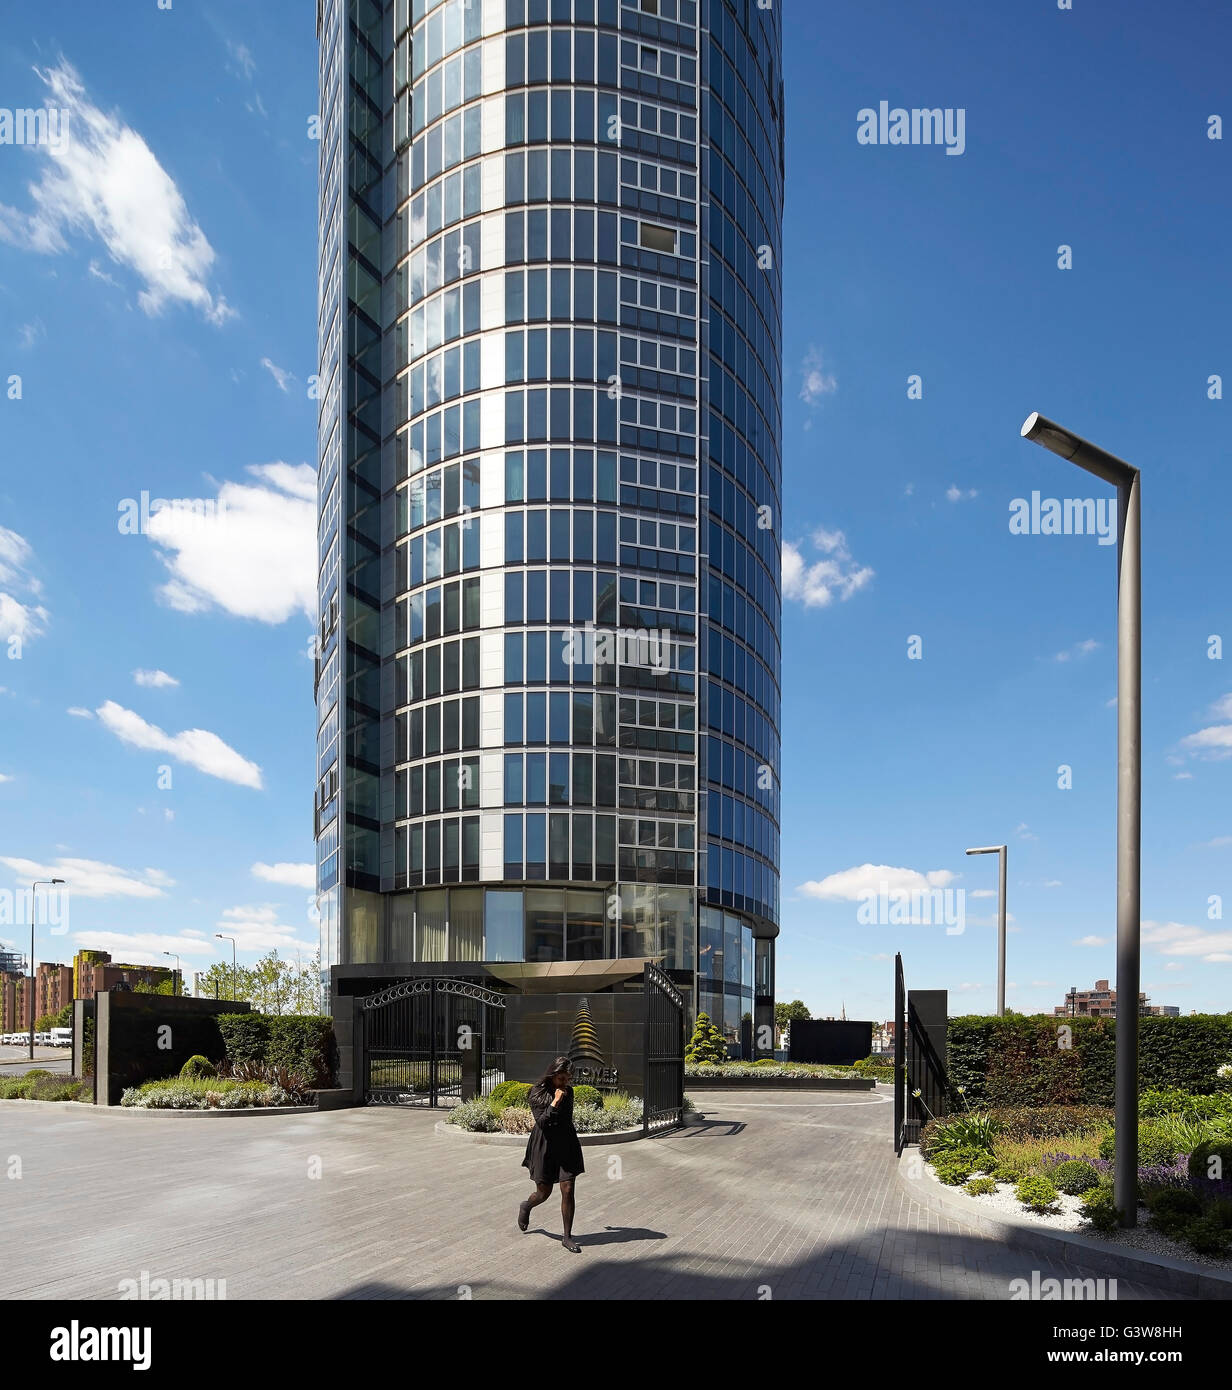 Entrée fermée au développement résidentiel. St George Wharf Tower, London, Royaume-Uni. Architecte : Broadway Malyan Limited, 2014. Banque D'Images